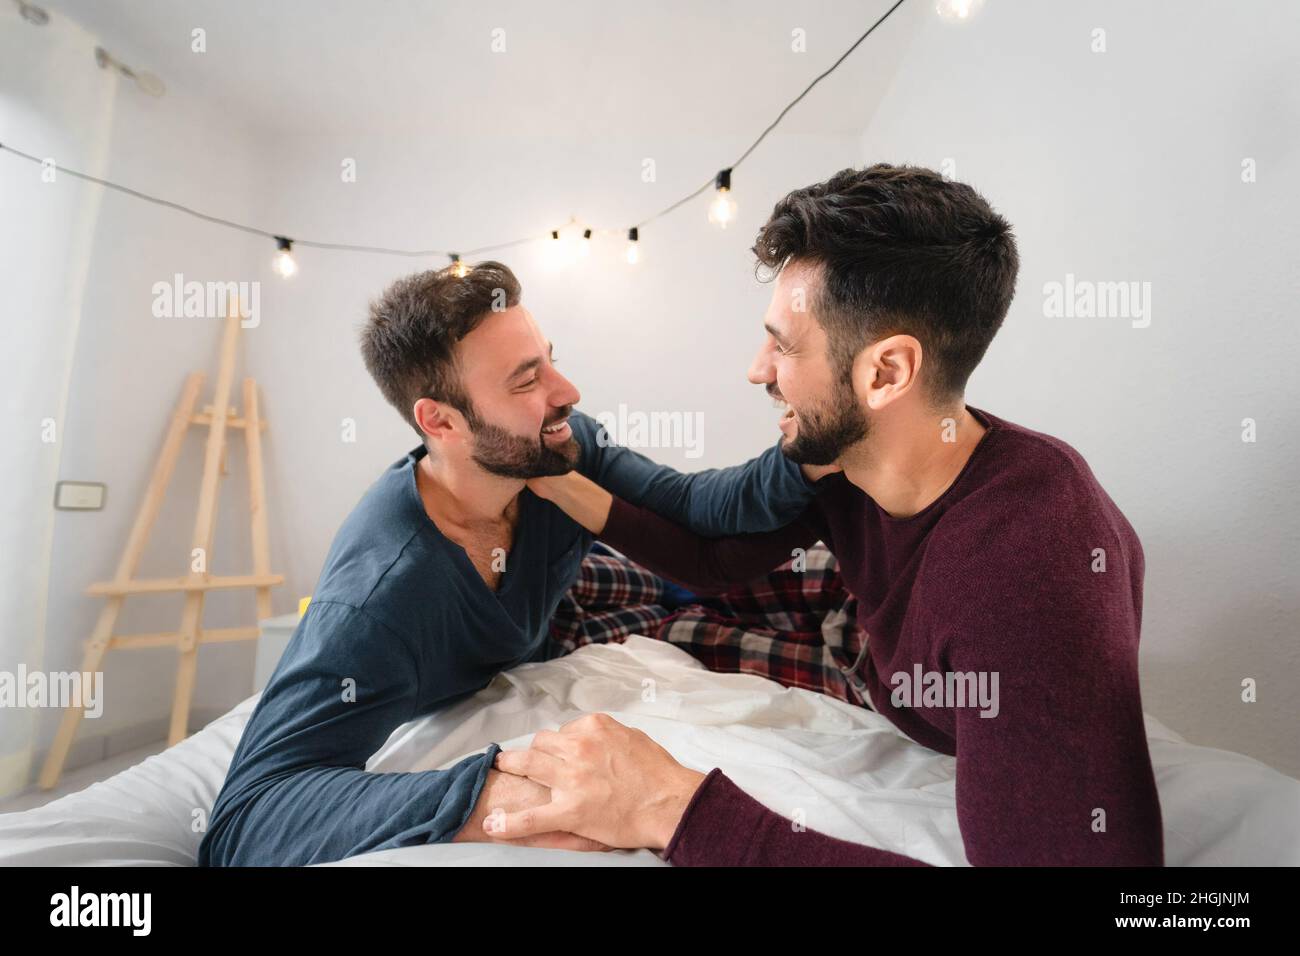 Glücklich Gay paar mit zarten Momente im Schlafzimmer - homosexuell Liebesbeziehung und Gleichstellungskonzept Stockfoto